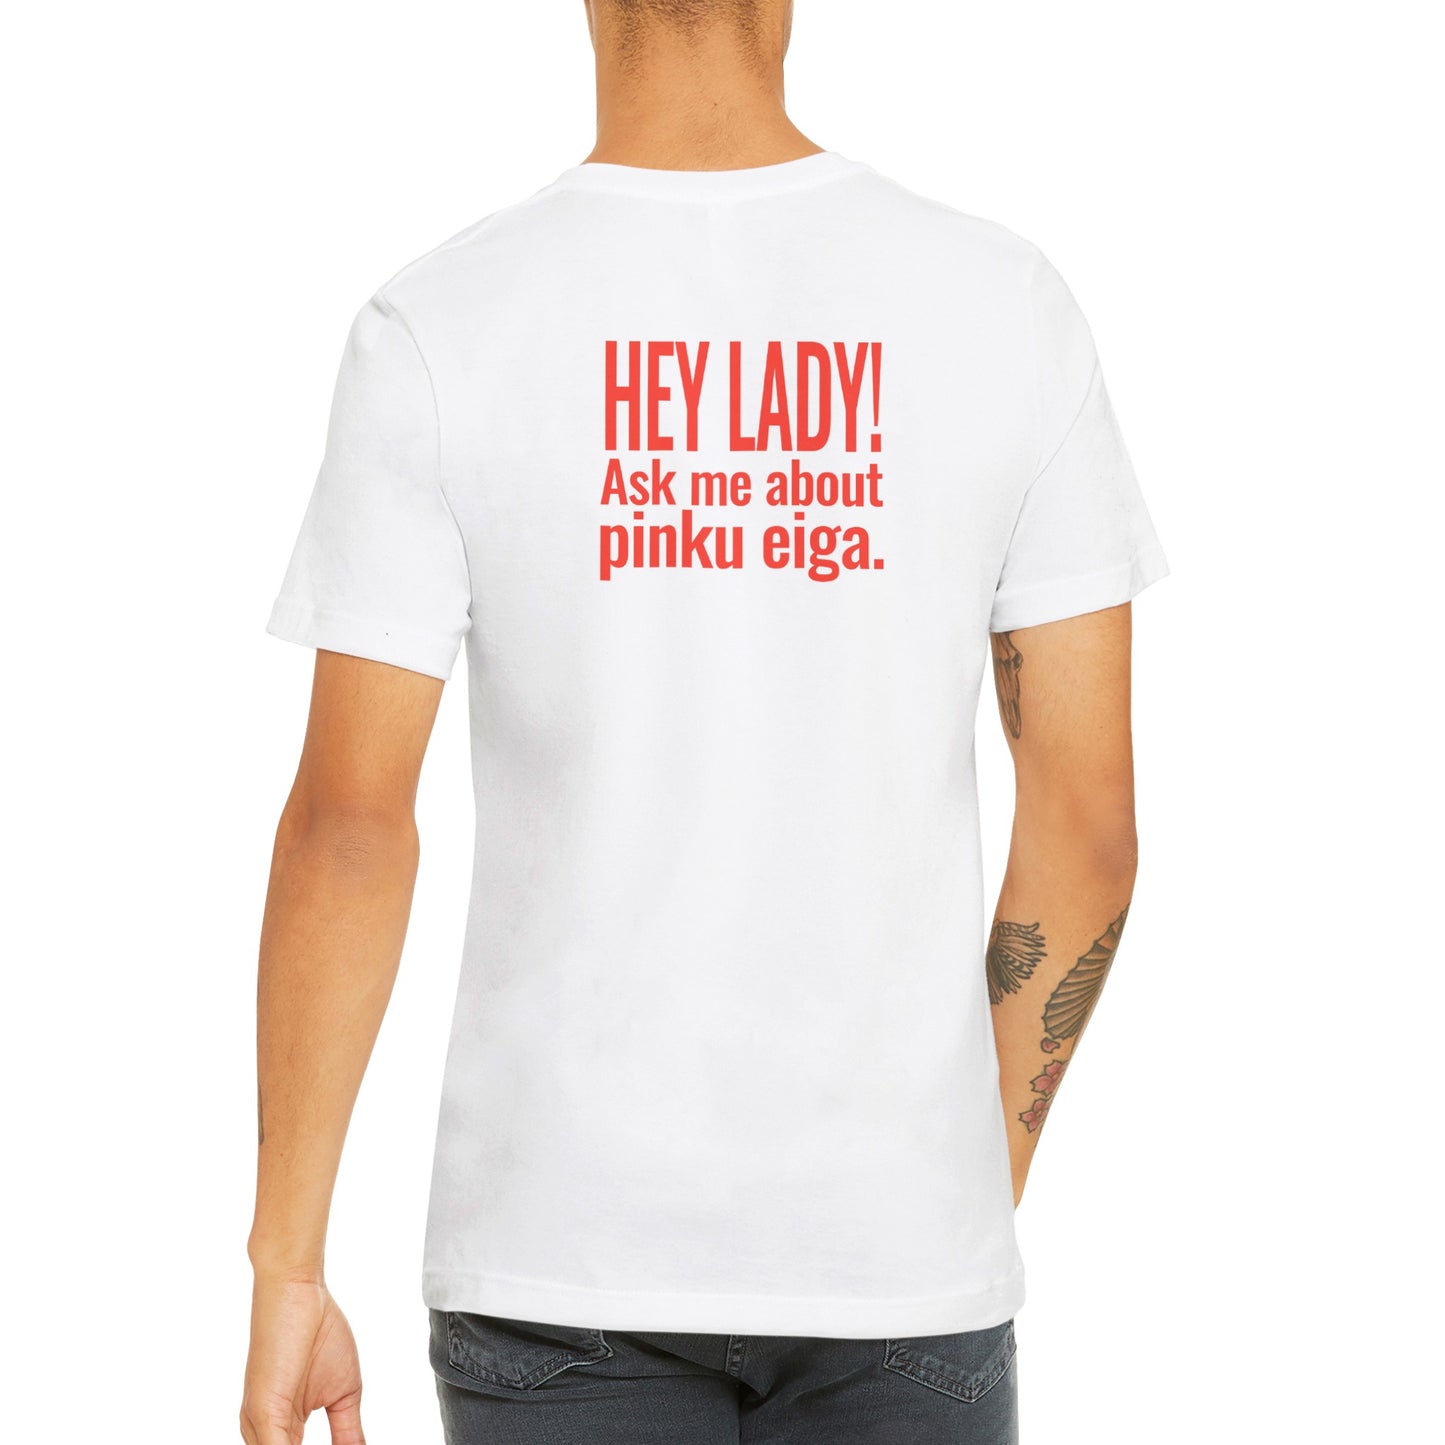 Pinku Lewis T-Shirt